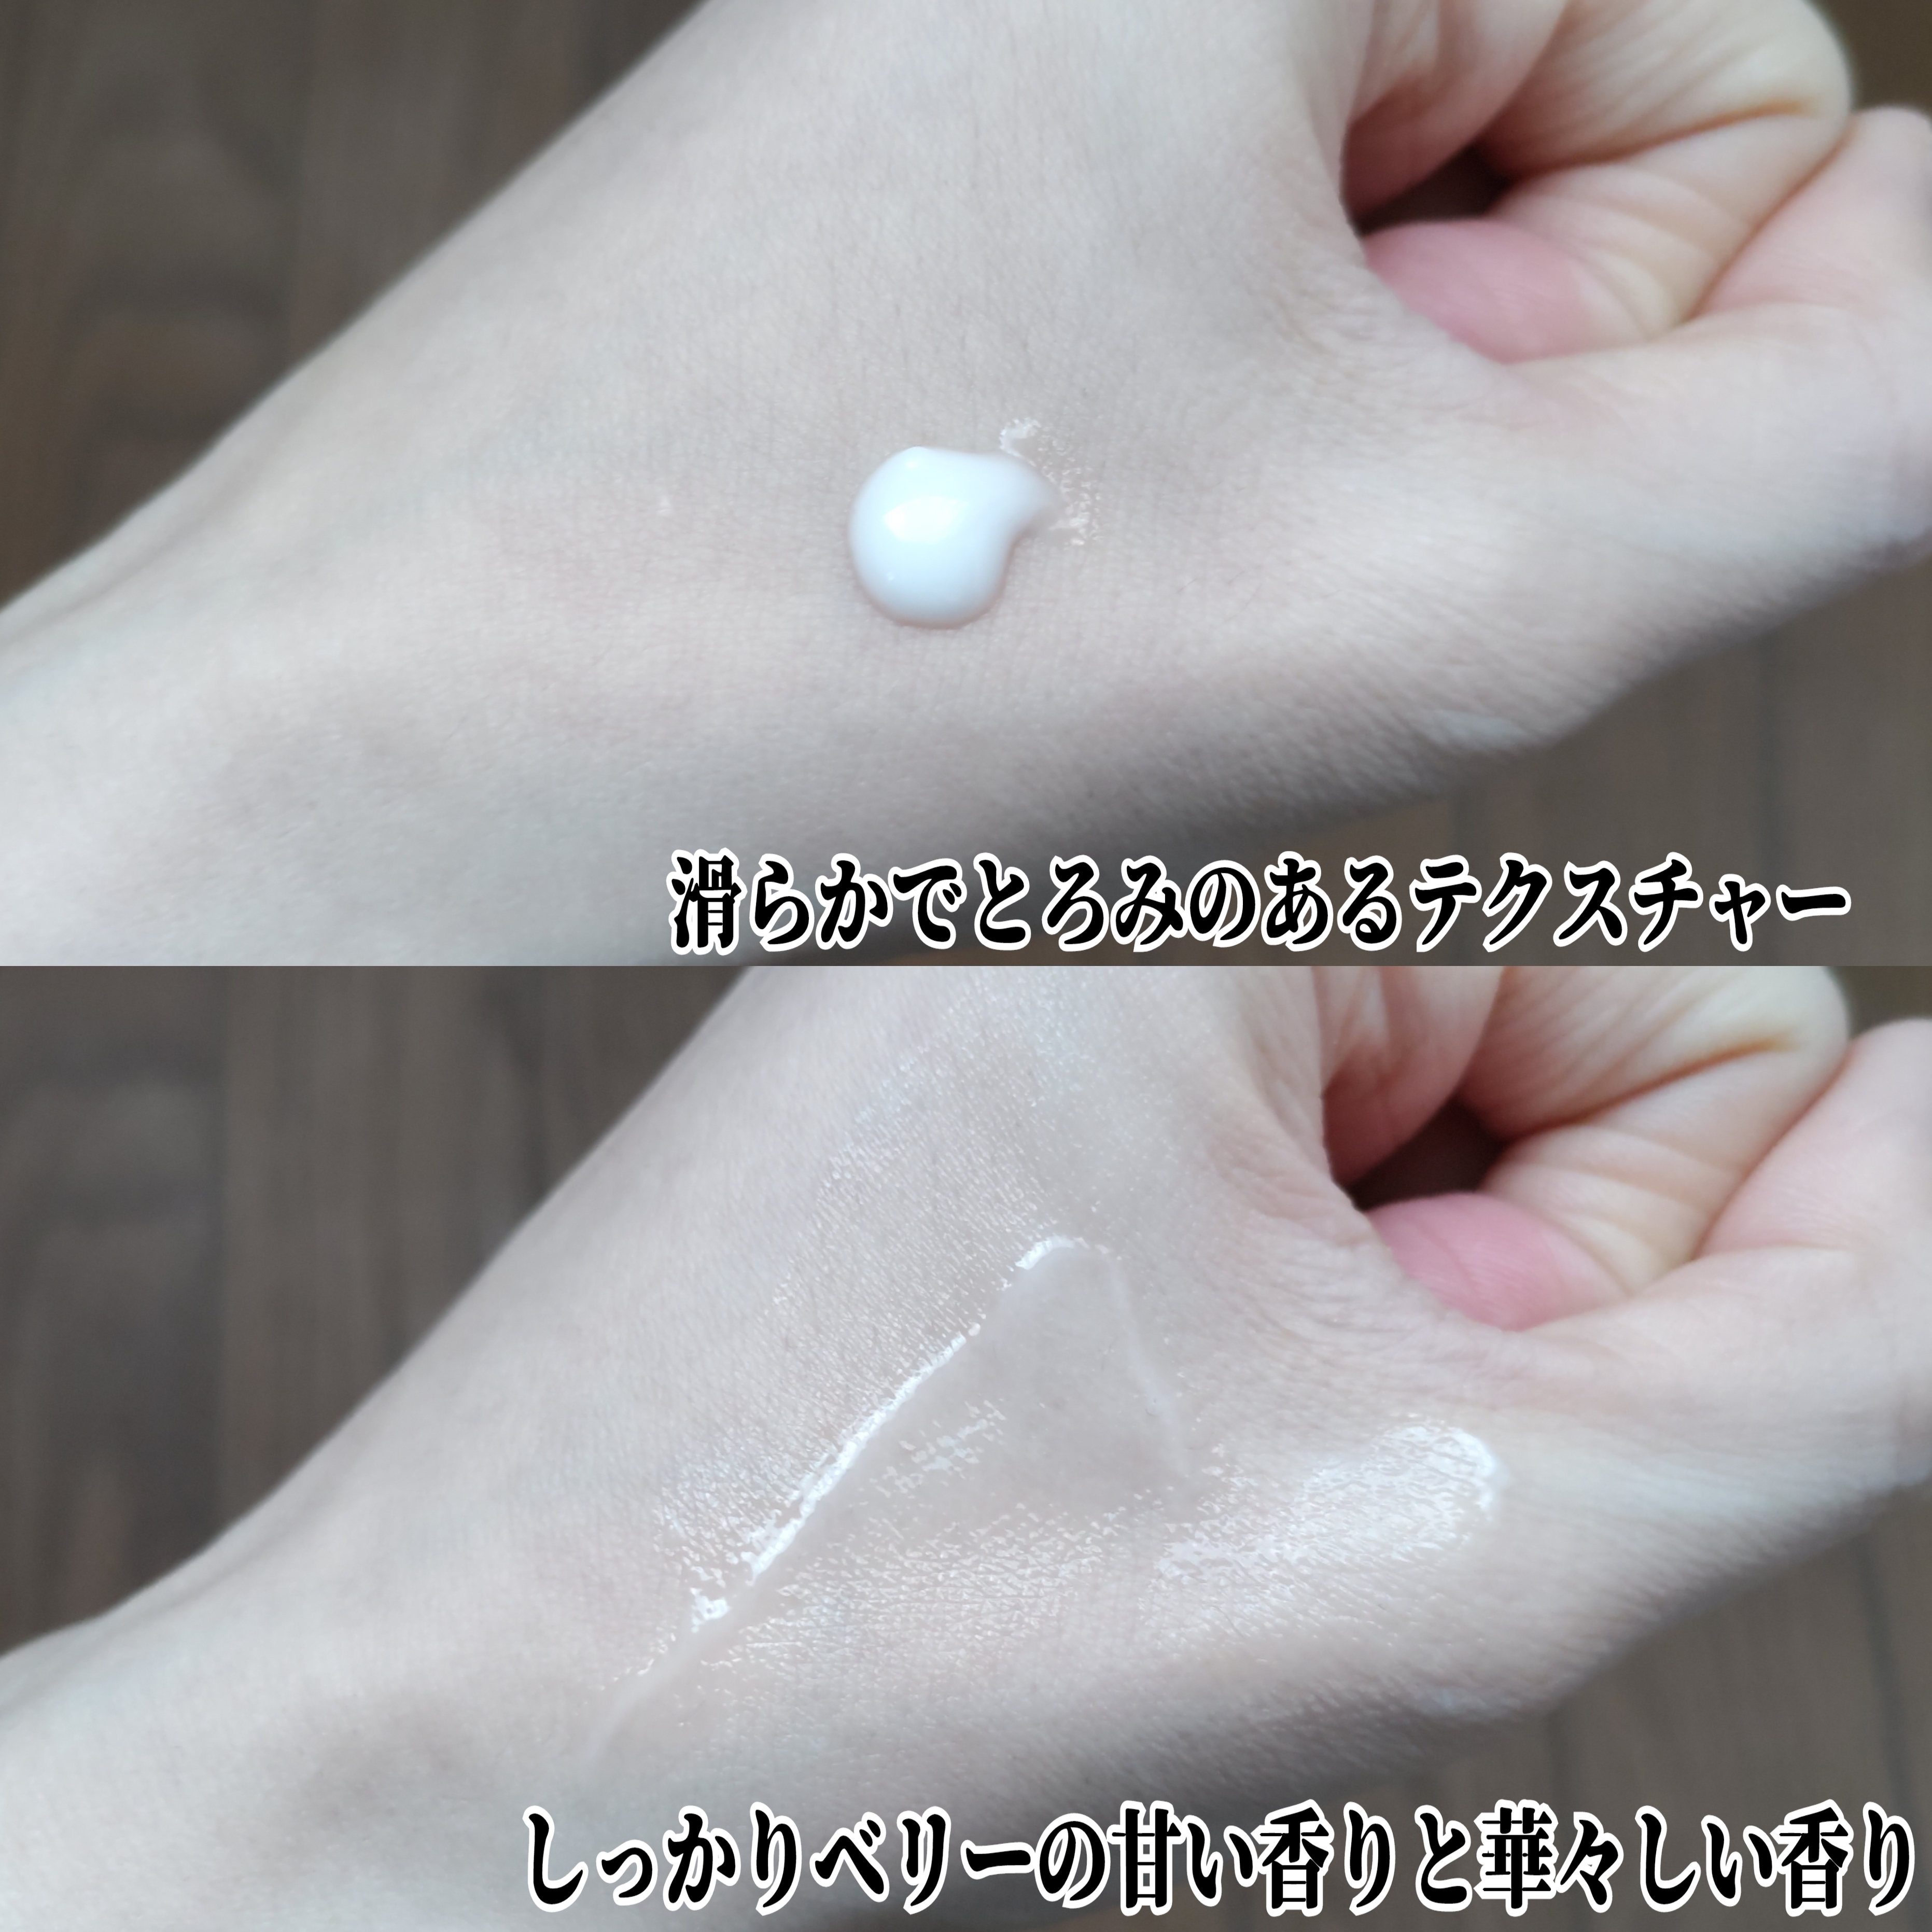 ボタニカルヘアミルク ダメージケアを使ったYuKaRi♡さんのクチコミ画像4